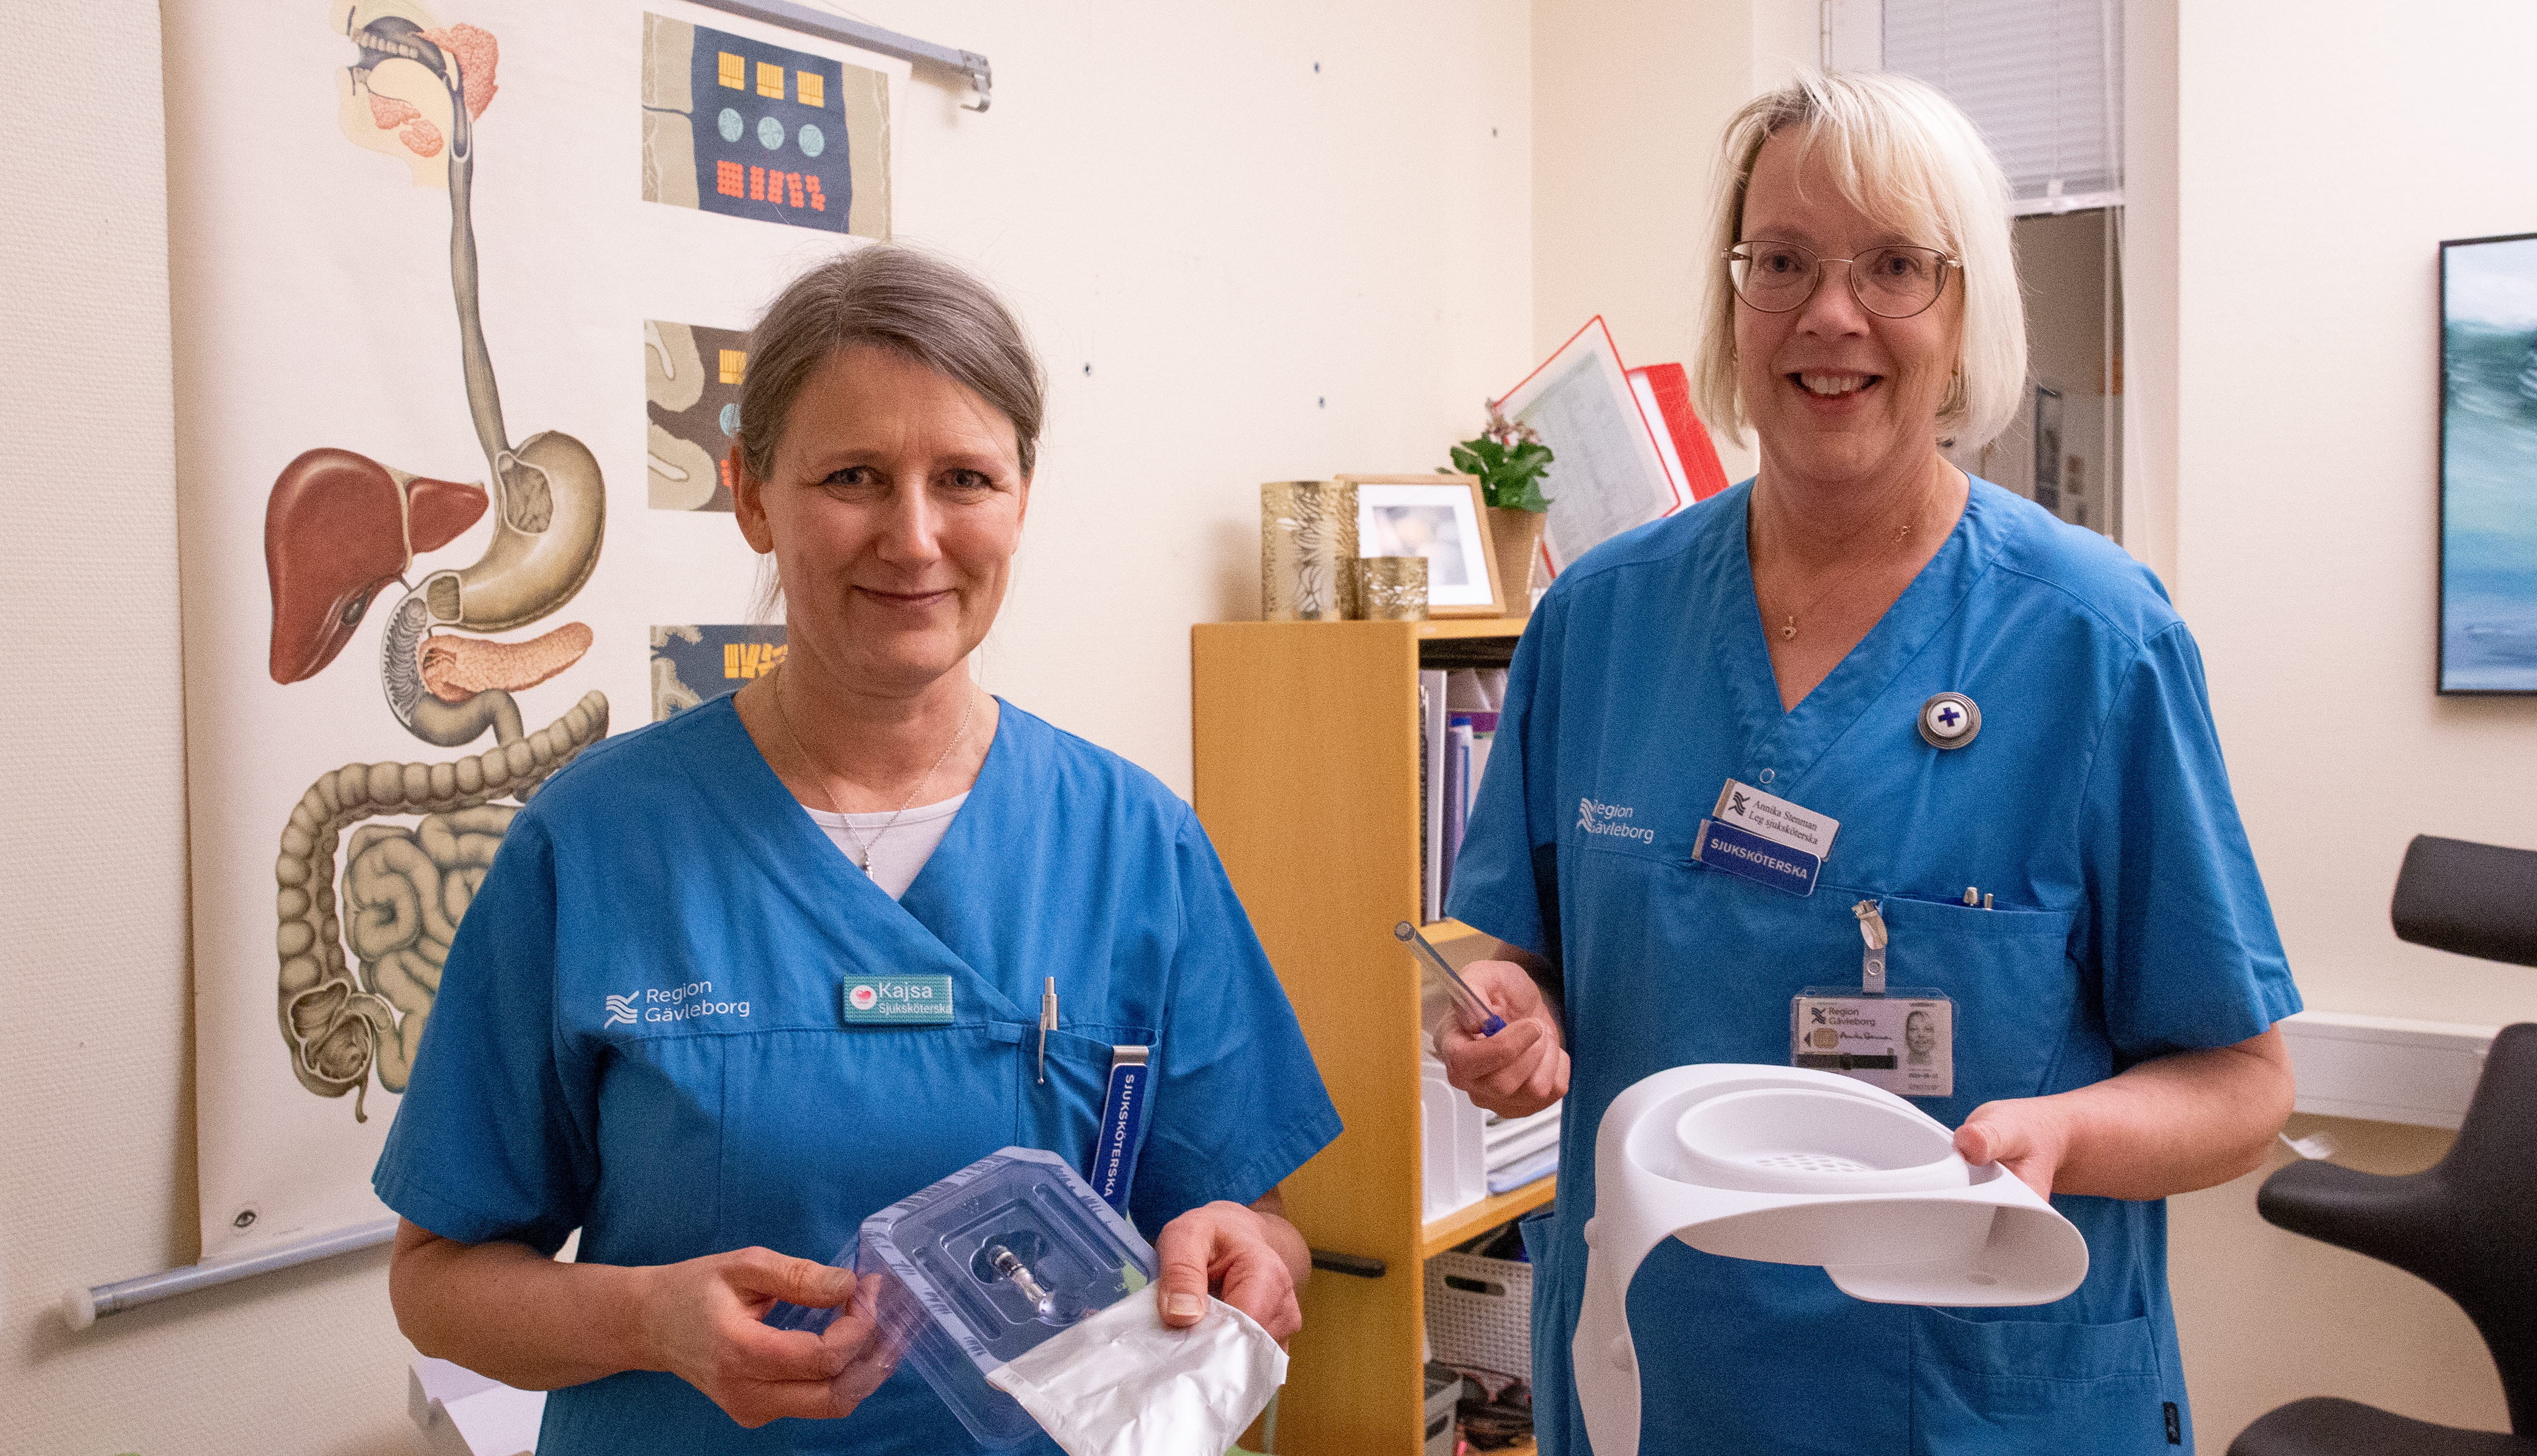 Kajsa Granqvist e Anika Steinmann sono infermiere presso la clinica di gastroenterologia di Gavle.